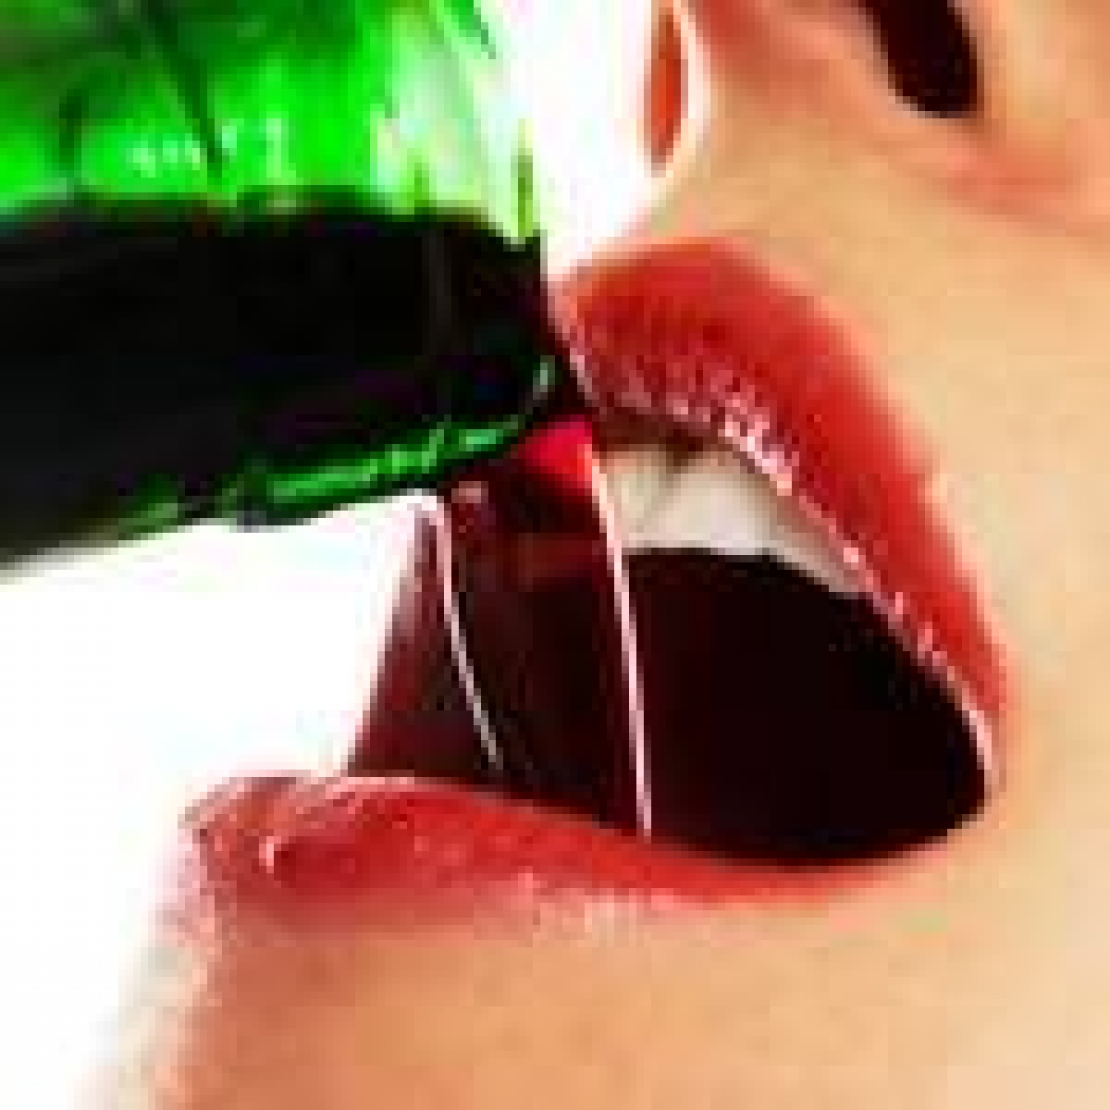 Il trend dei consumi di bevande alcoliche dominato dalle preferenze femminili